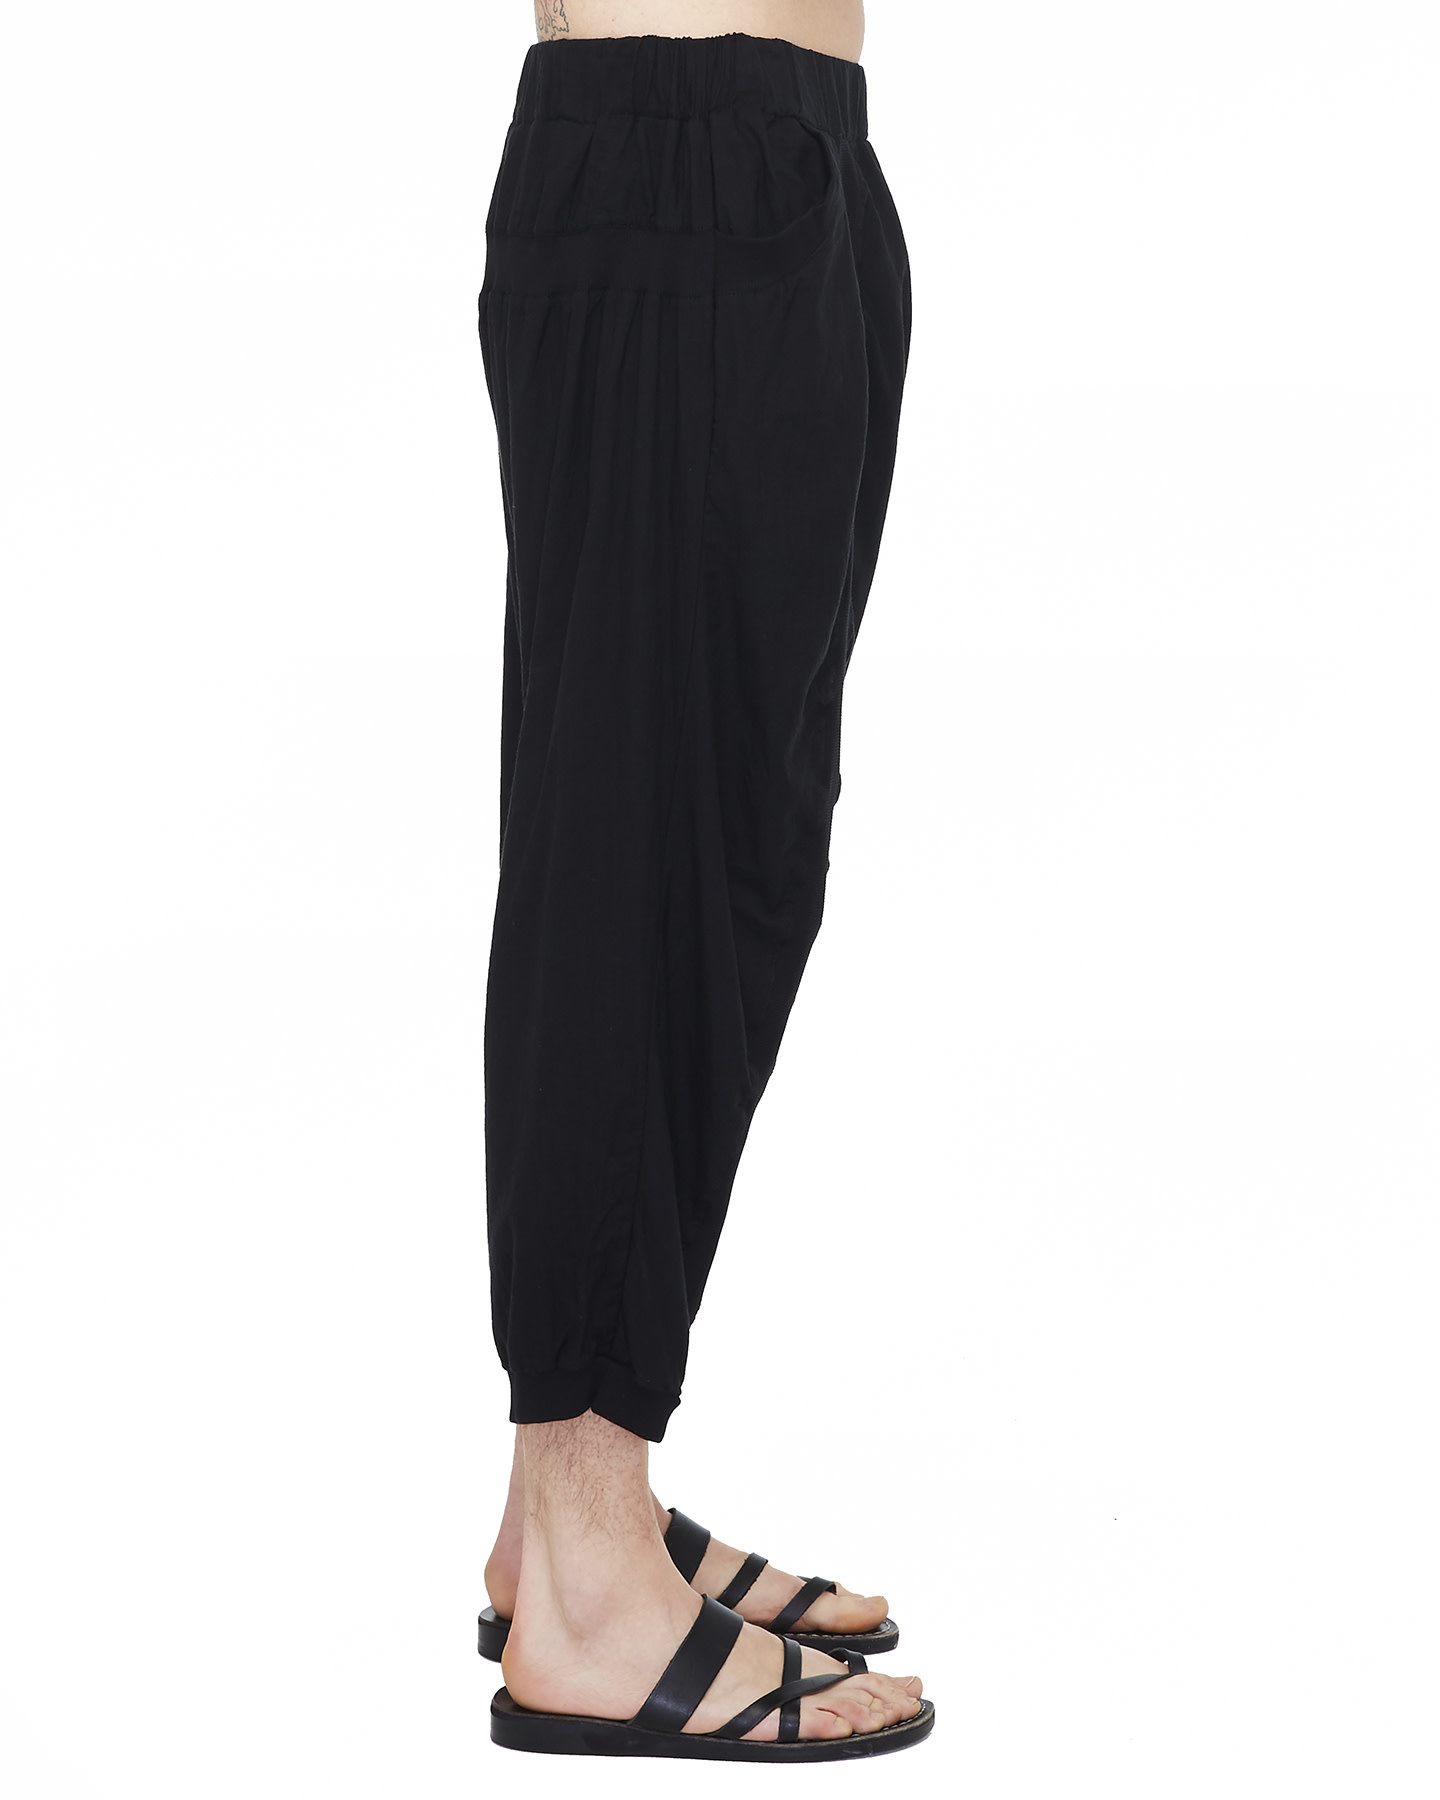 Buy Women Drop Crotch Pants/extravagant Black Pants/women Black Cotton Pants/plus  Size Harem Pants/everyday Pants/casual Comfortable Pants Online in India 